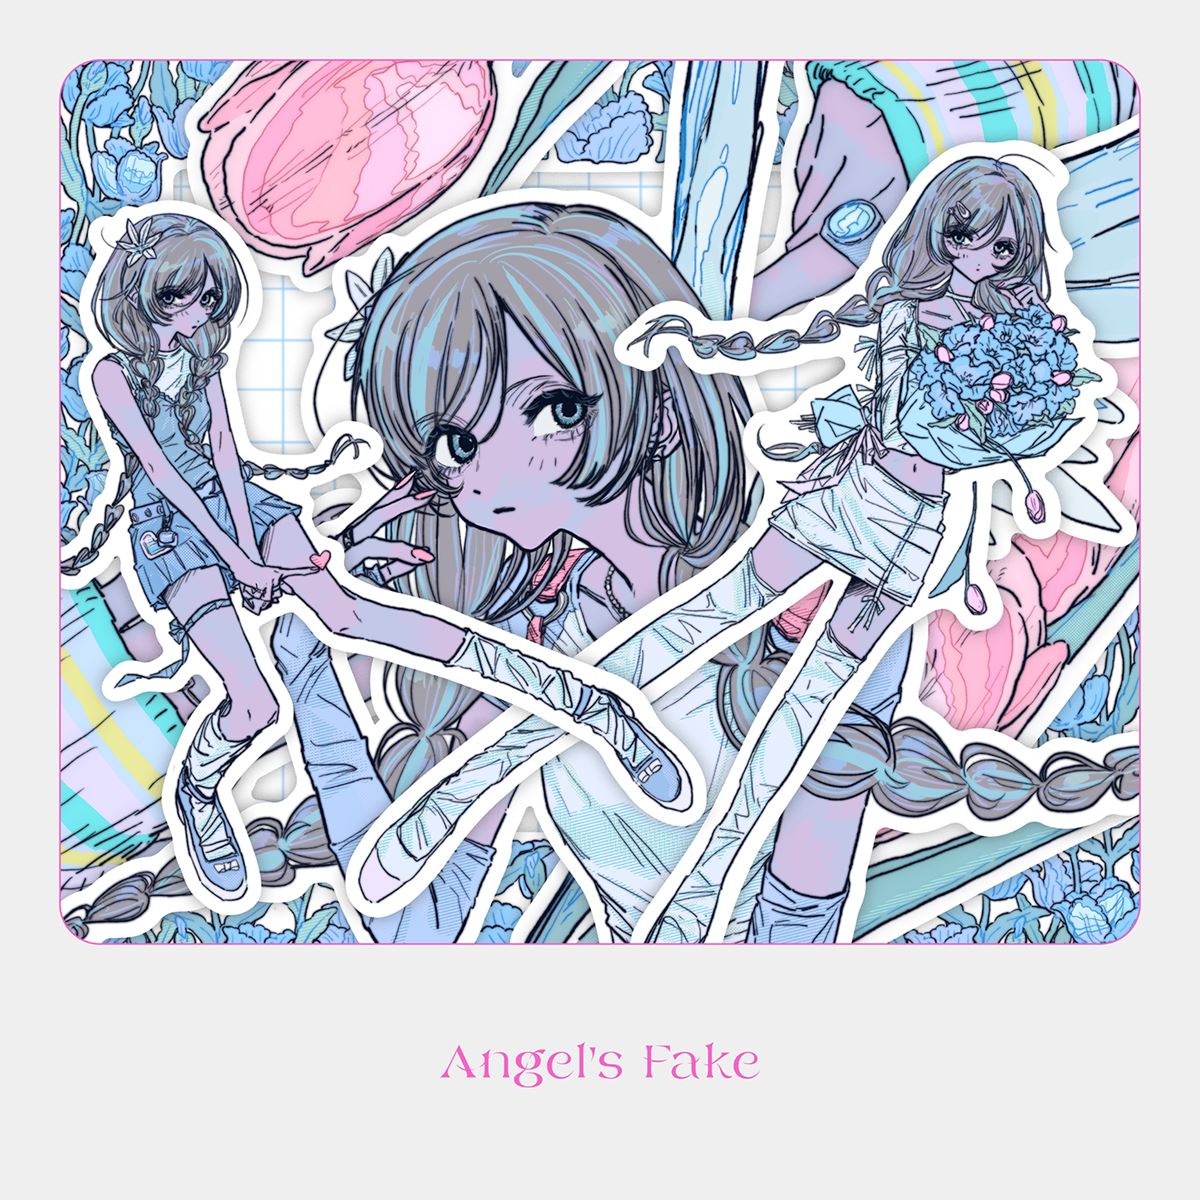 ダズビー、新曲「Angel’s Fake」本日配信リリース＆MV公開 - ぴあ音楽